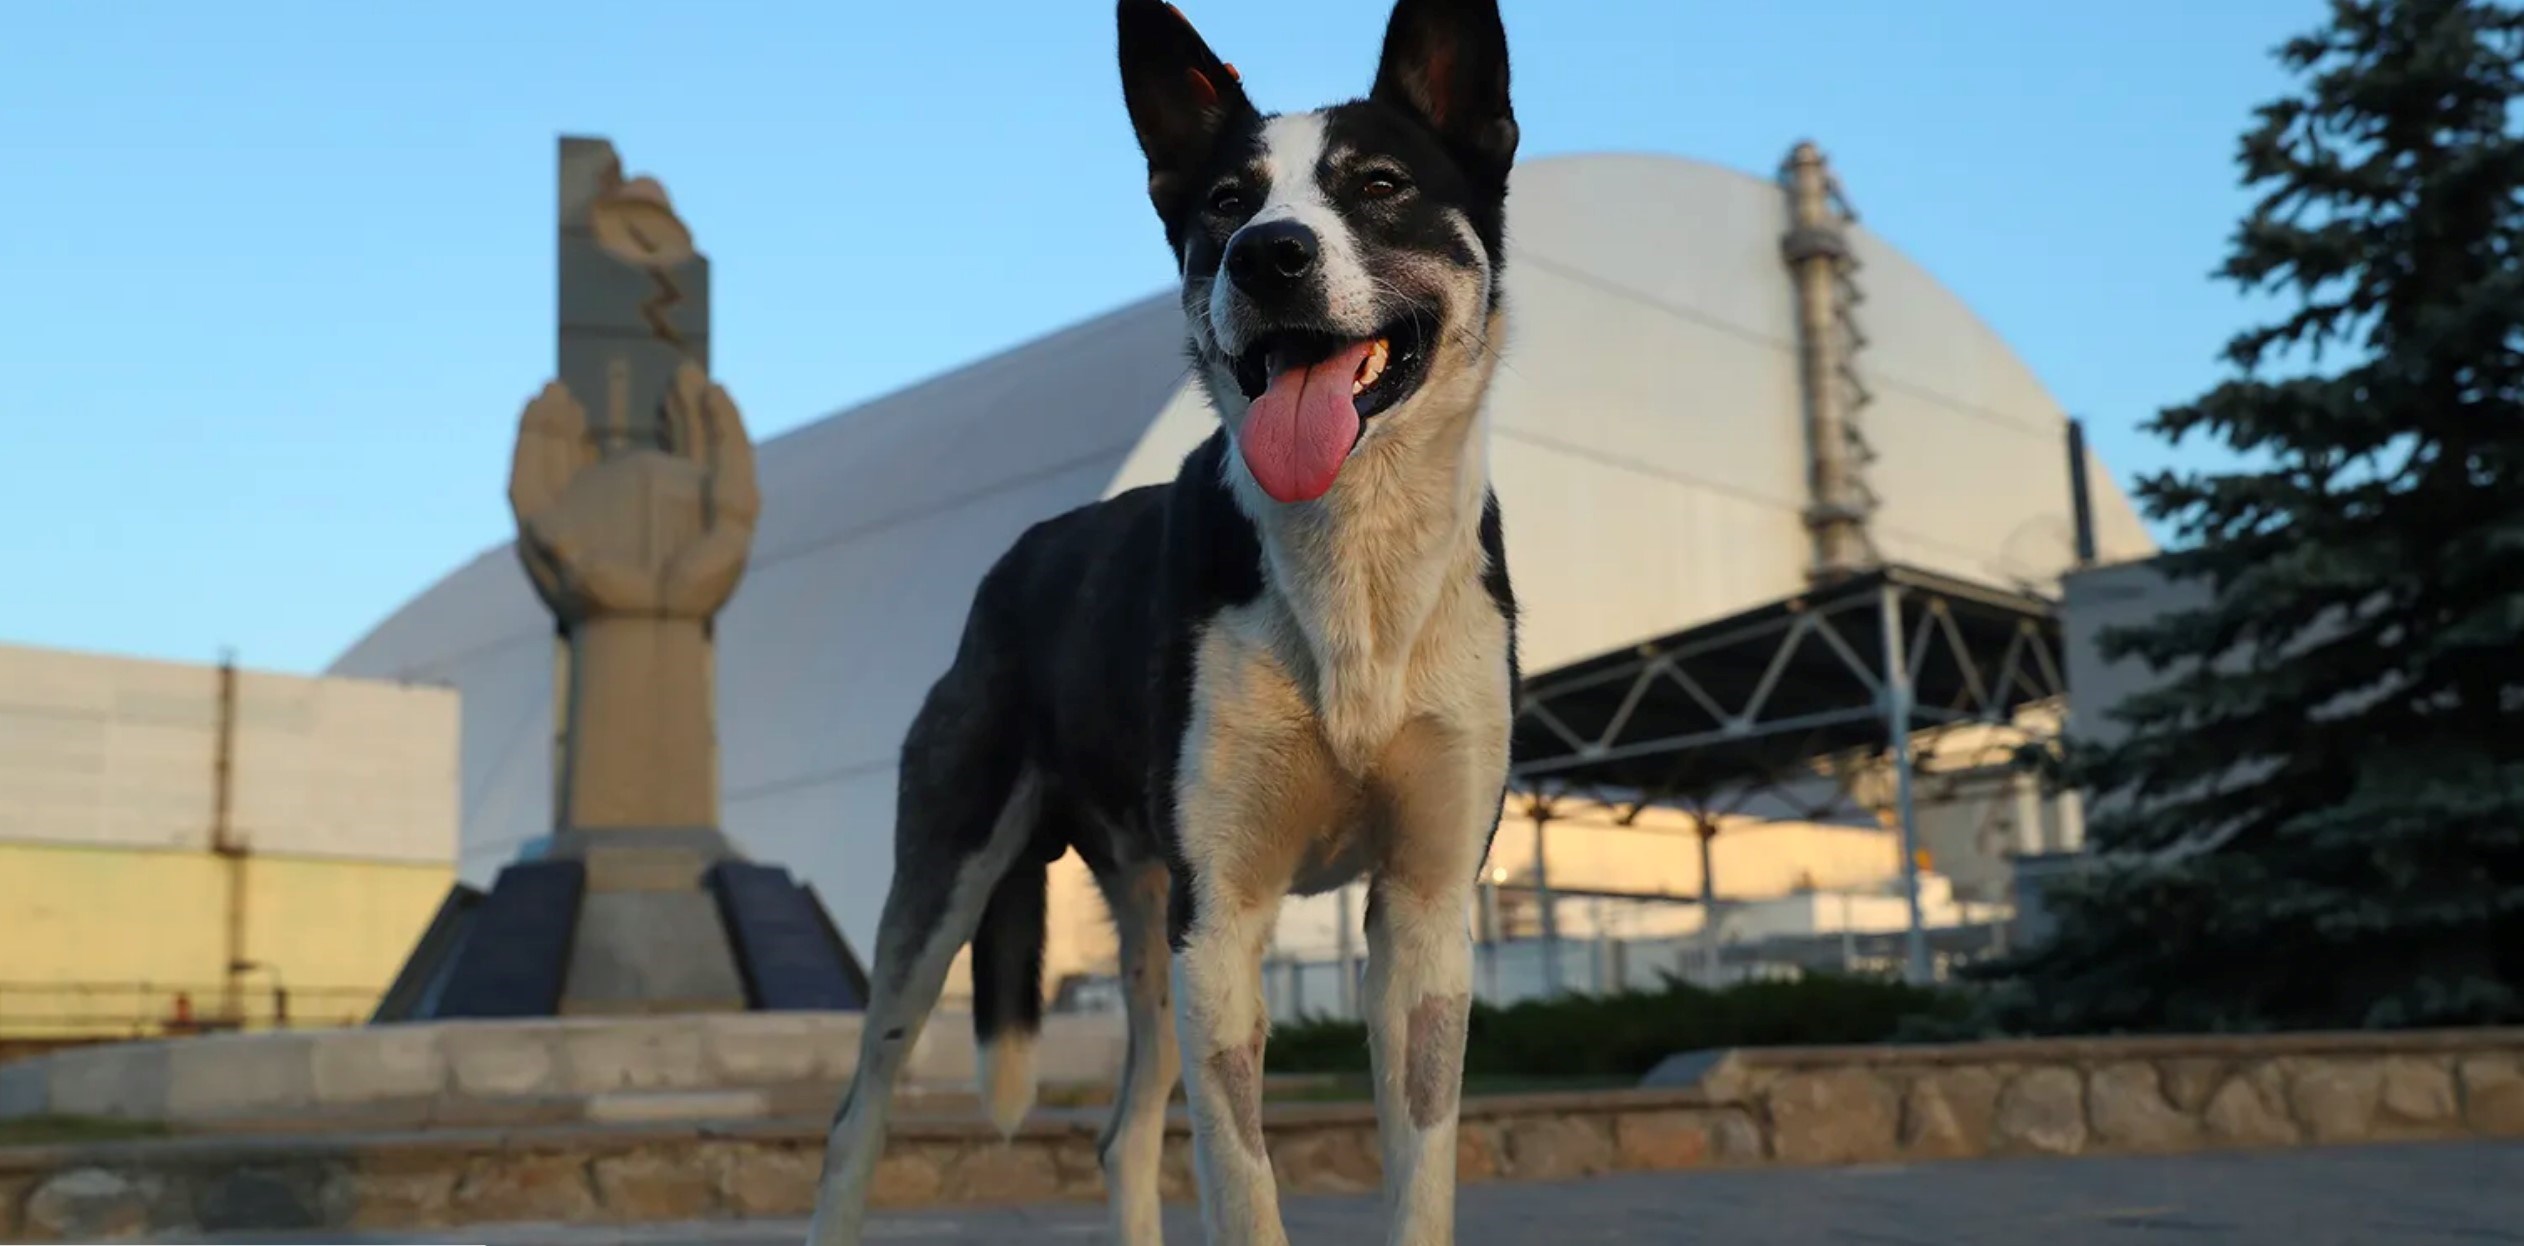 علماء يكتشفون تغييرات جينية لدى الكلاب الضالة بالقرب من محطة تشيرنوبل النووية